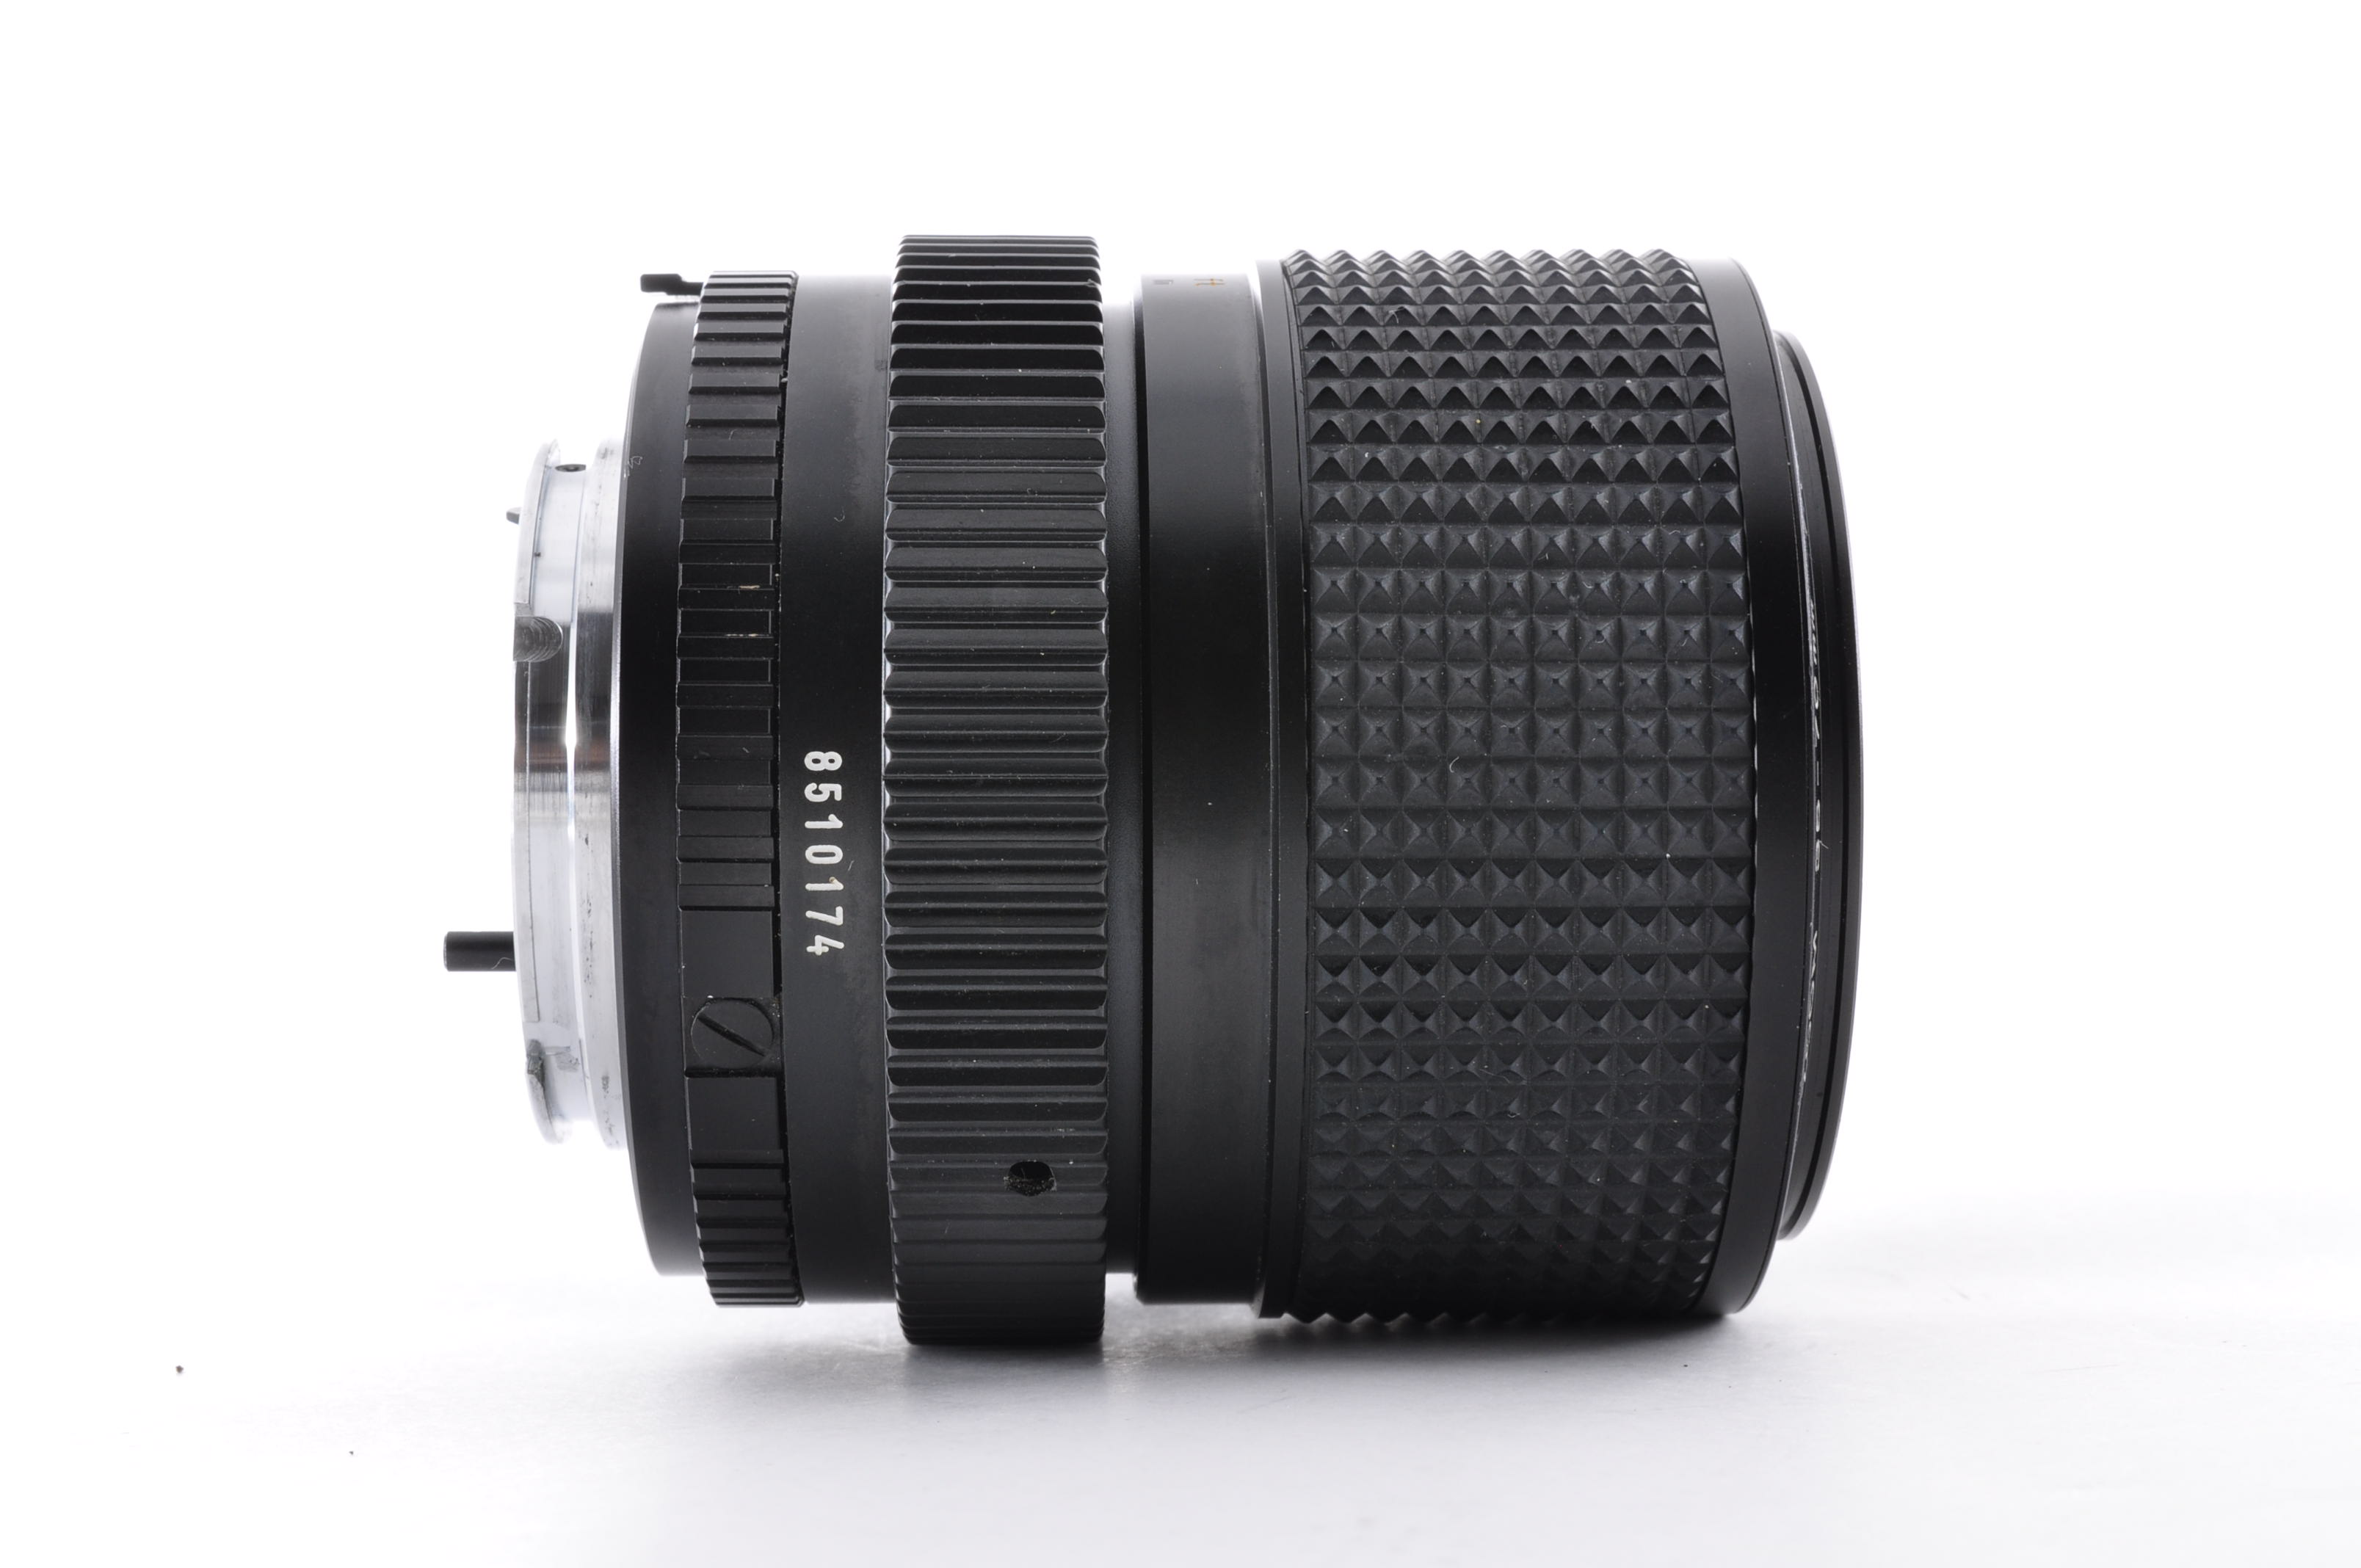 MINOLTA SRT 101 SLR 35mm Film Camera w/MD 35-70mm F3.5 Lens [Excellent] Japan img15